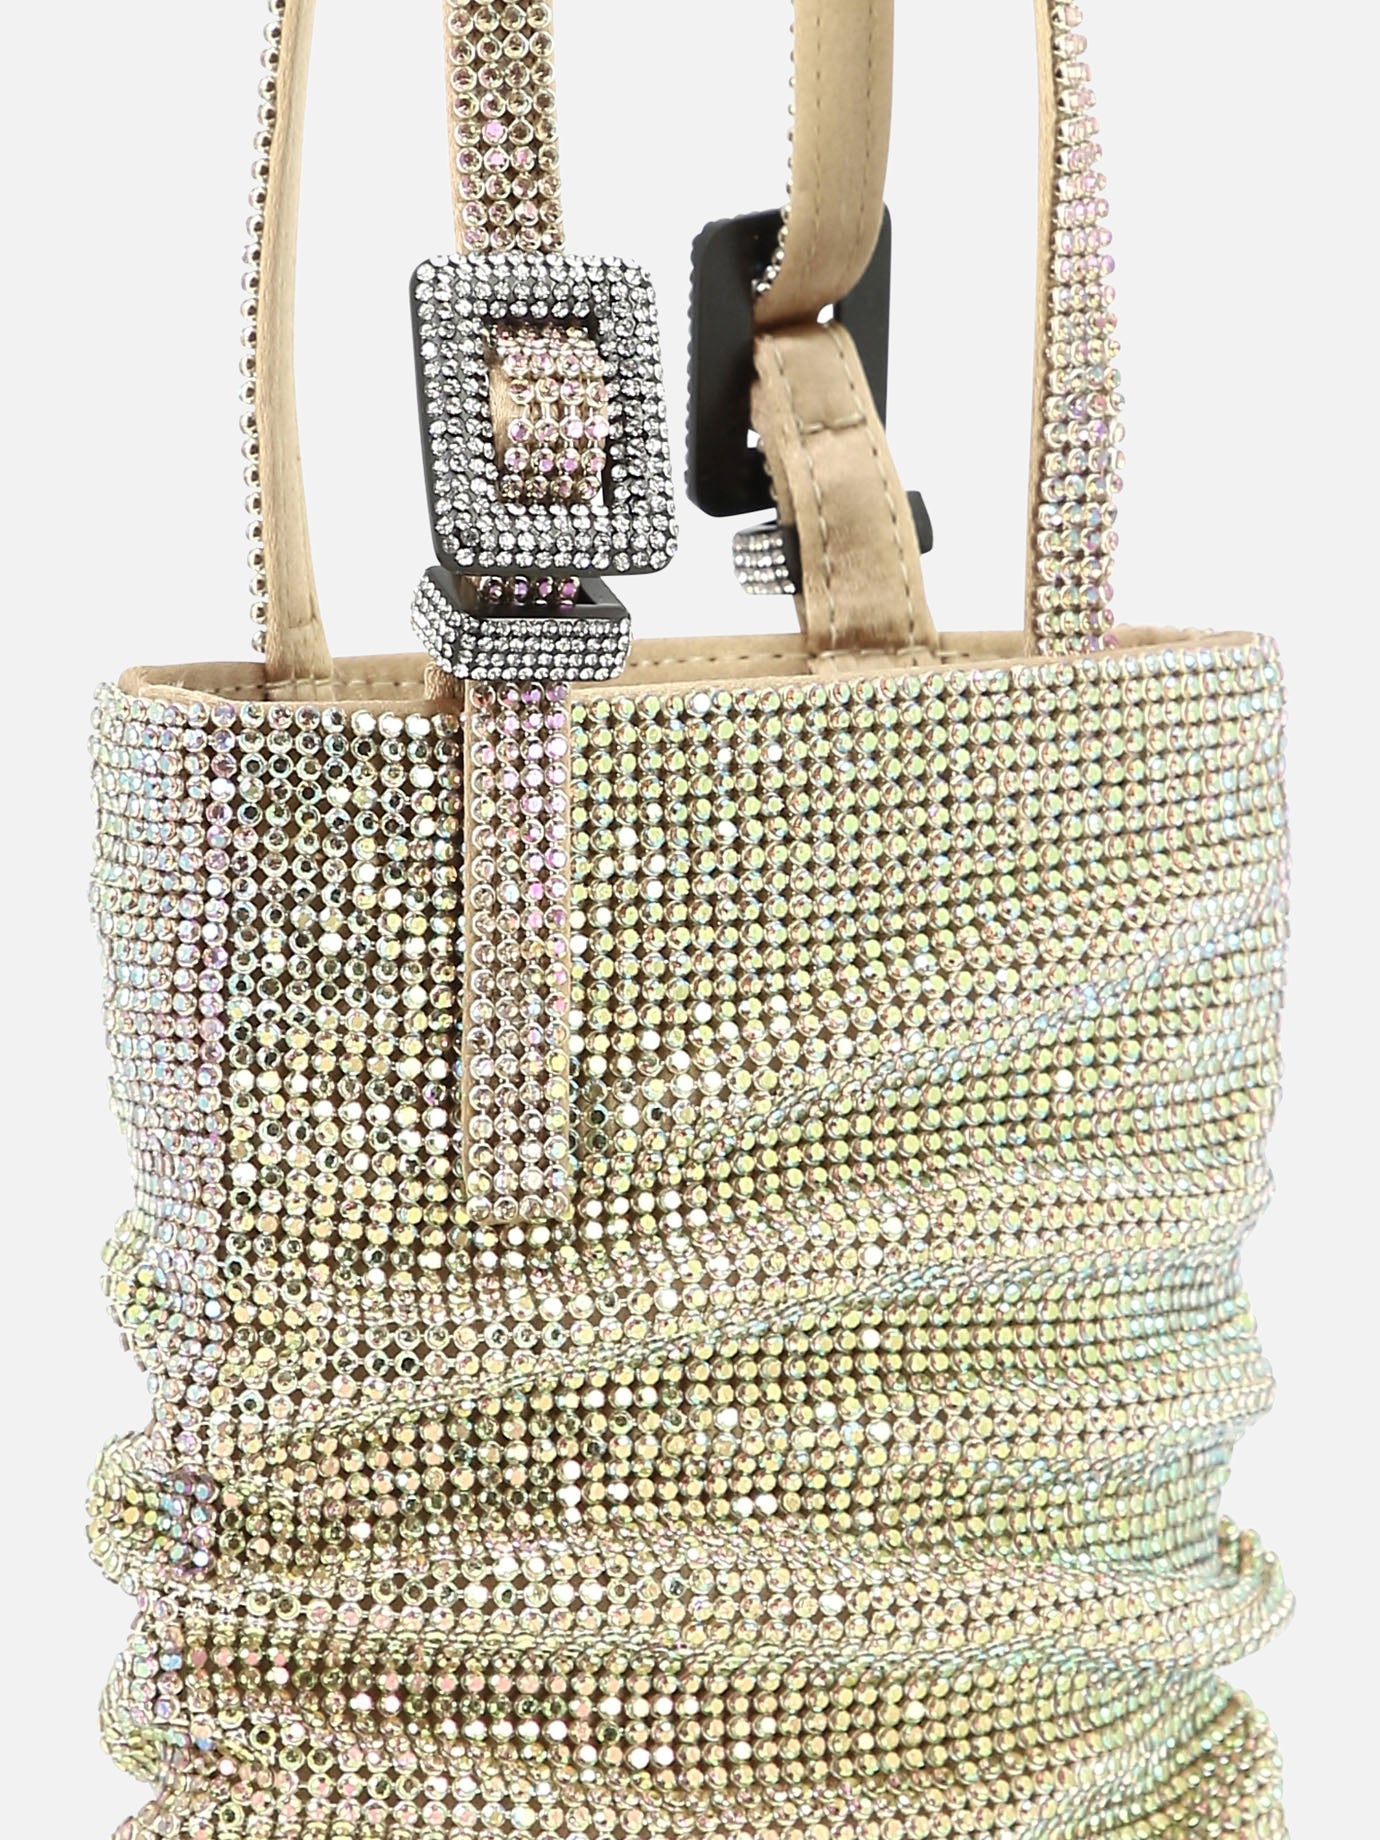 "Lollo La Petite" handbag